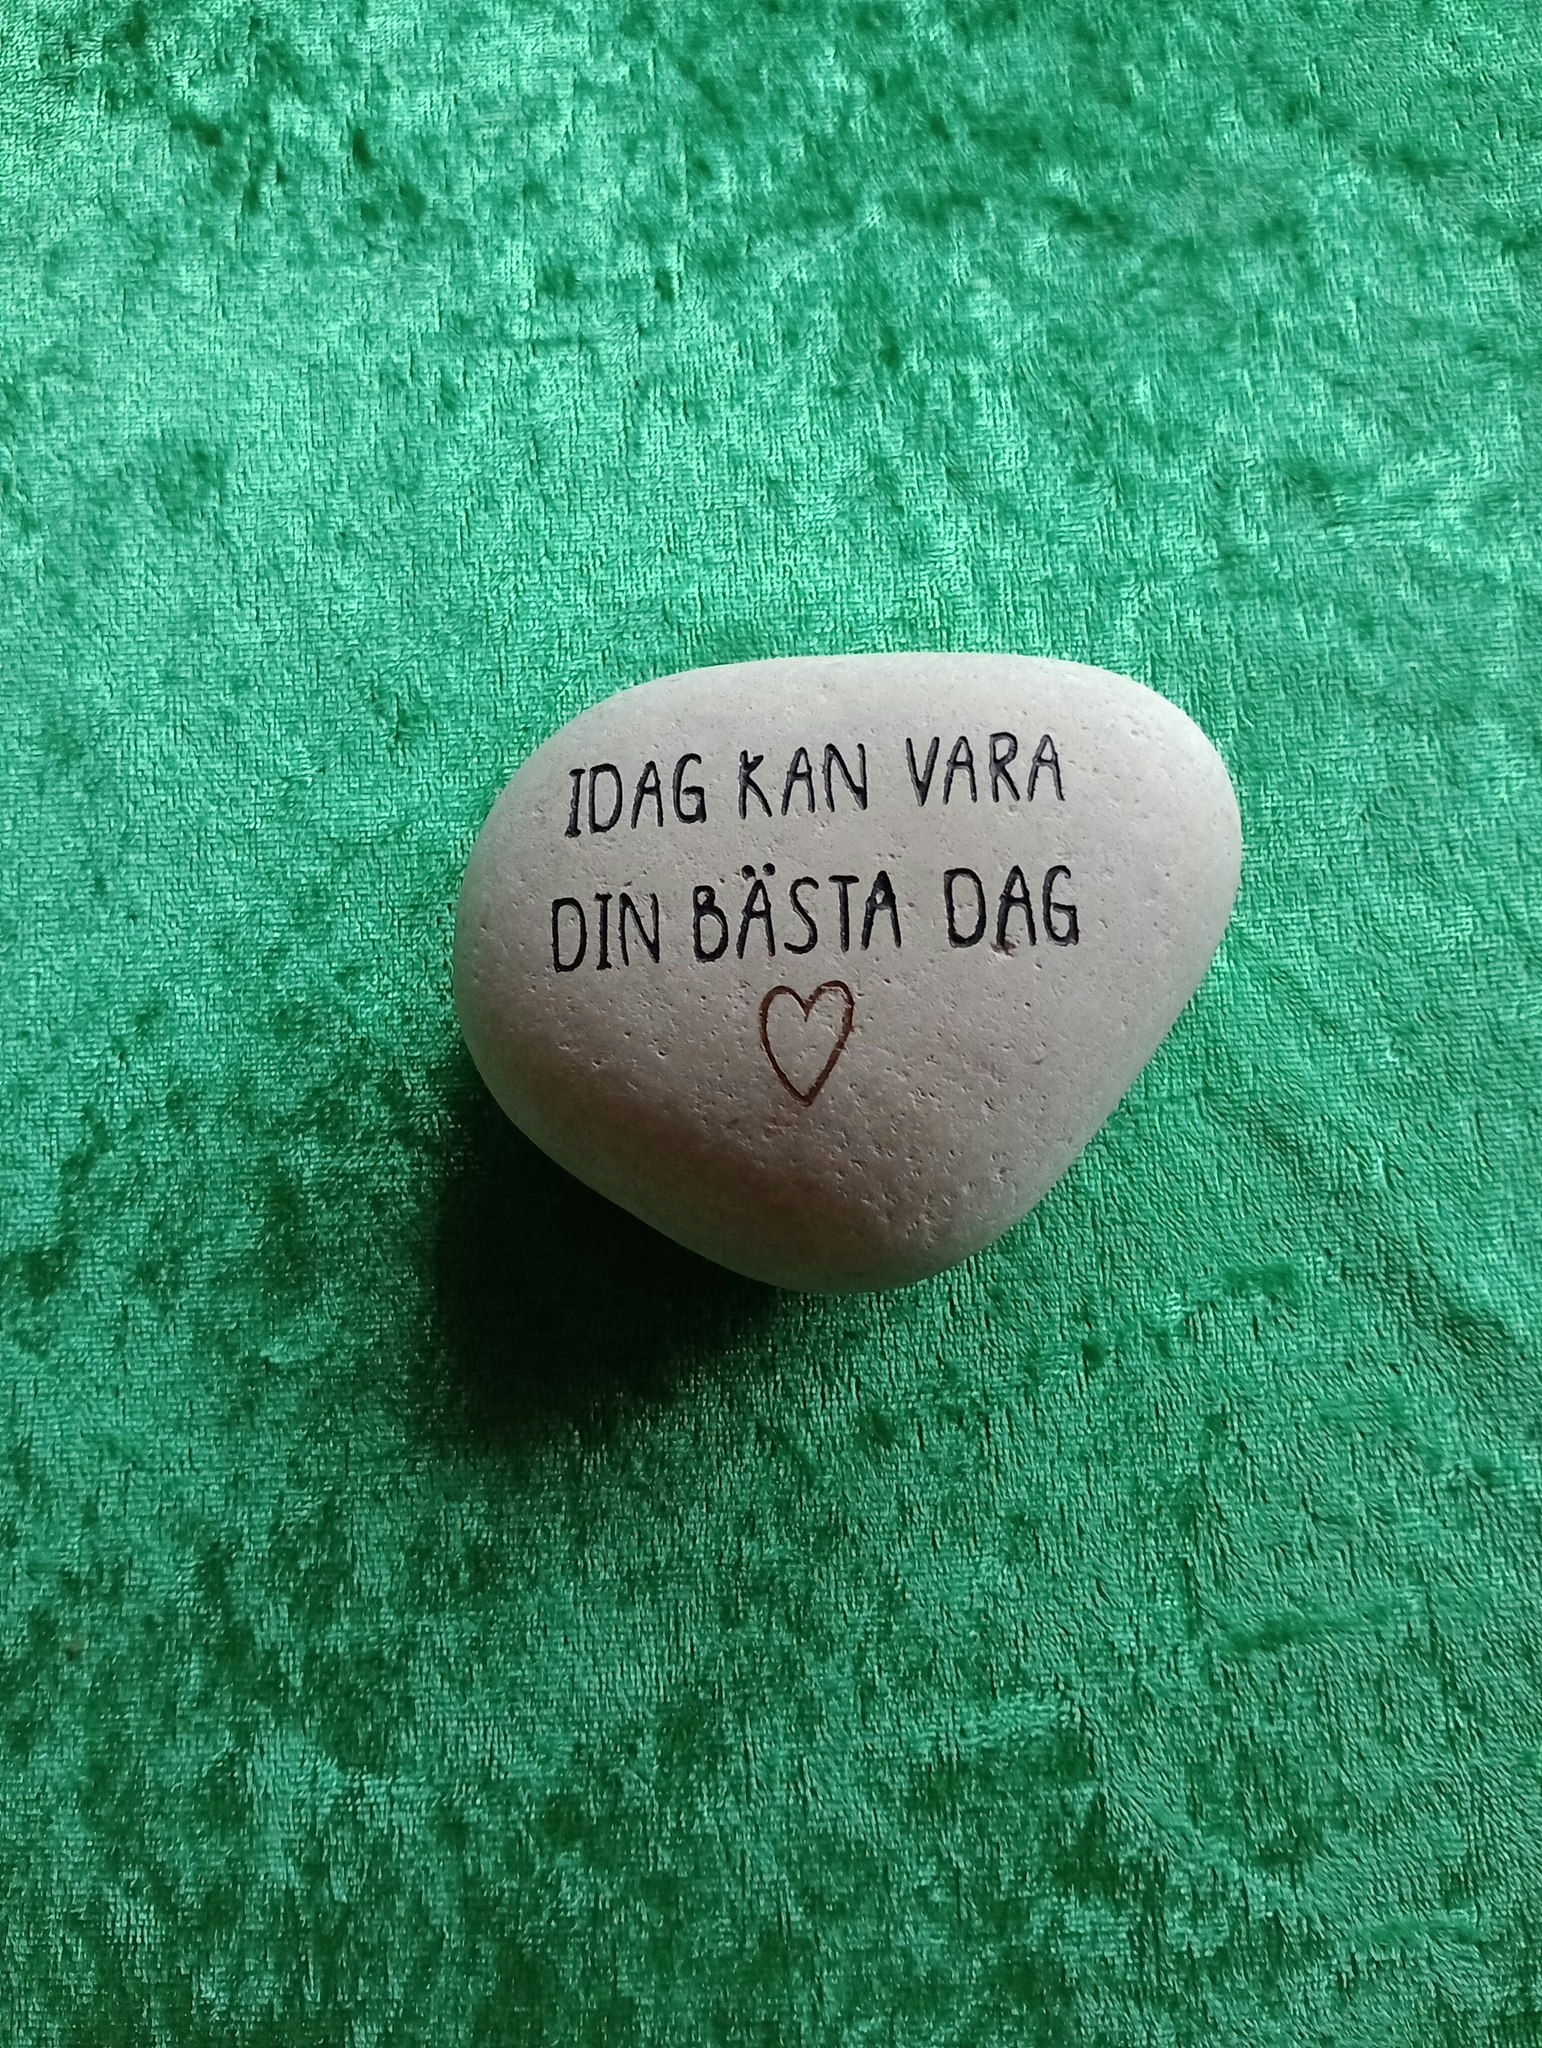 Sten med Text "Idag kan vara din bästa dag"